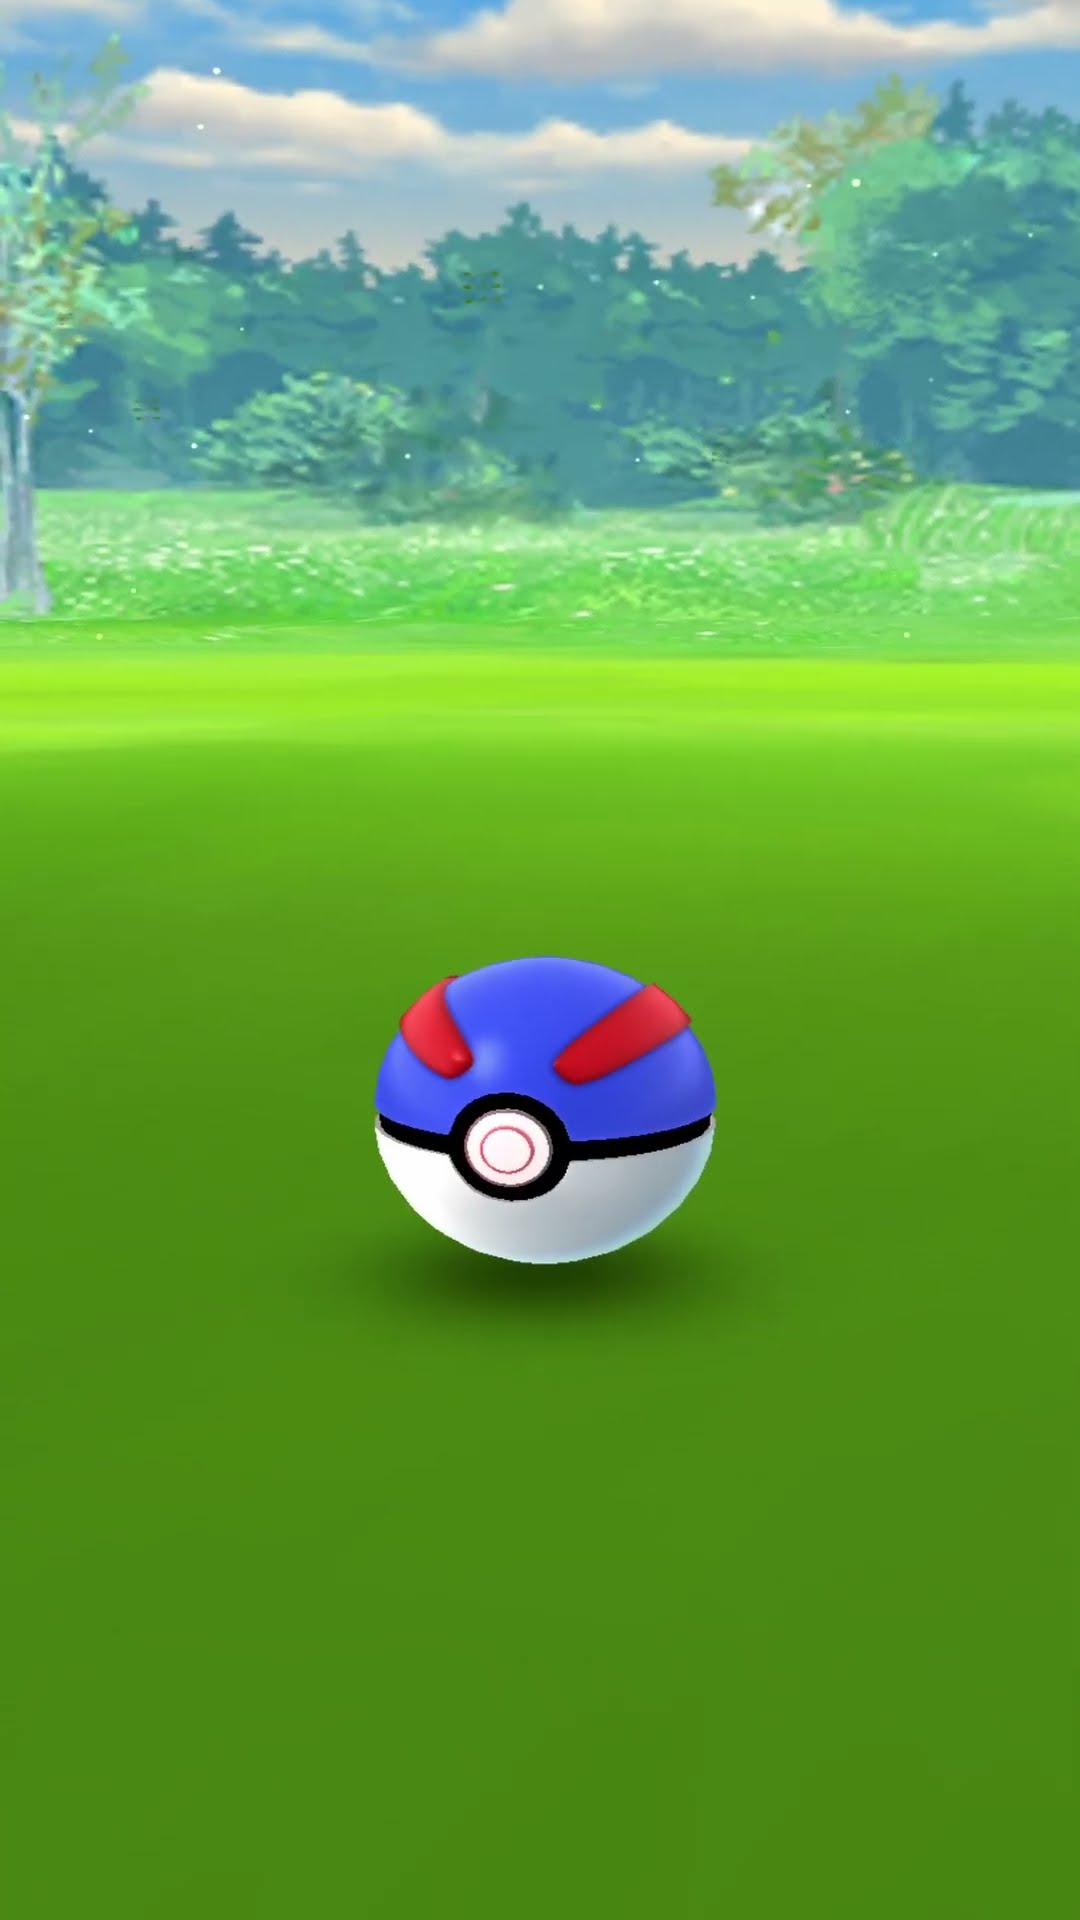 Catching a wild Lotad Pokémon Go